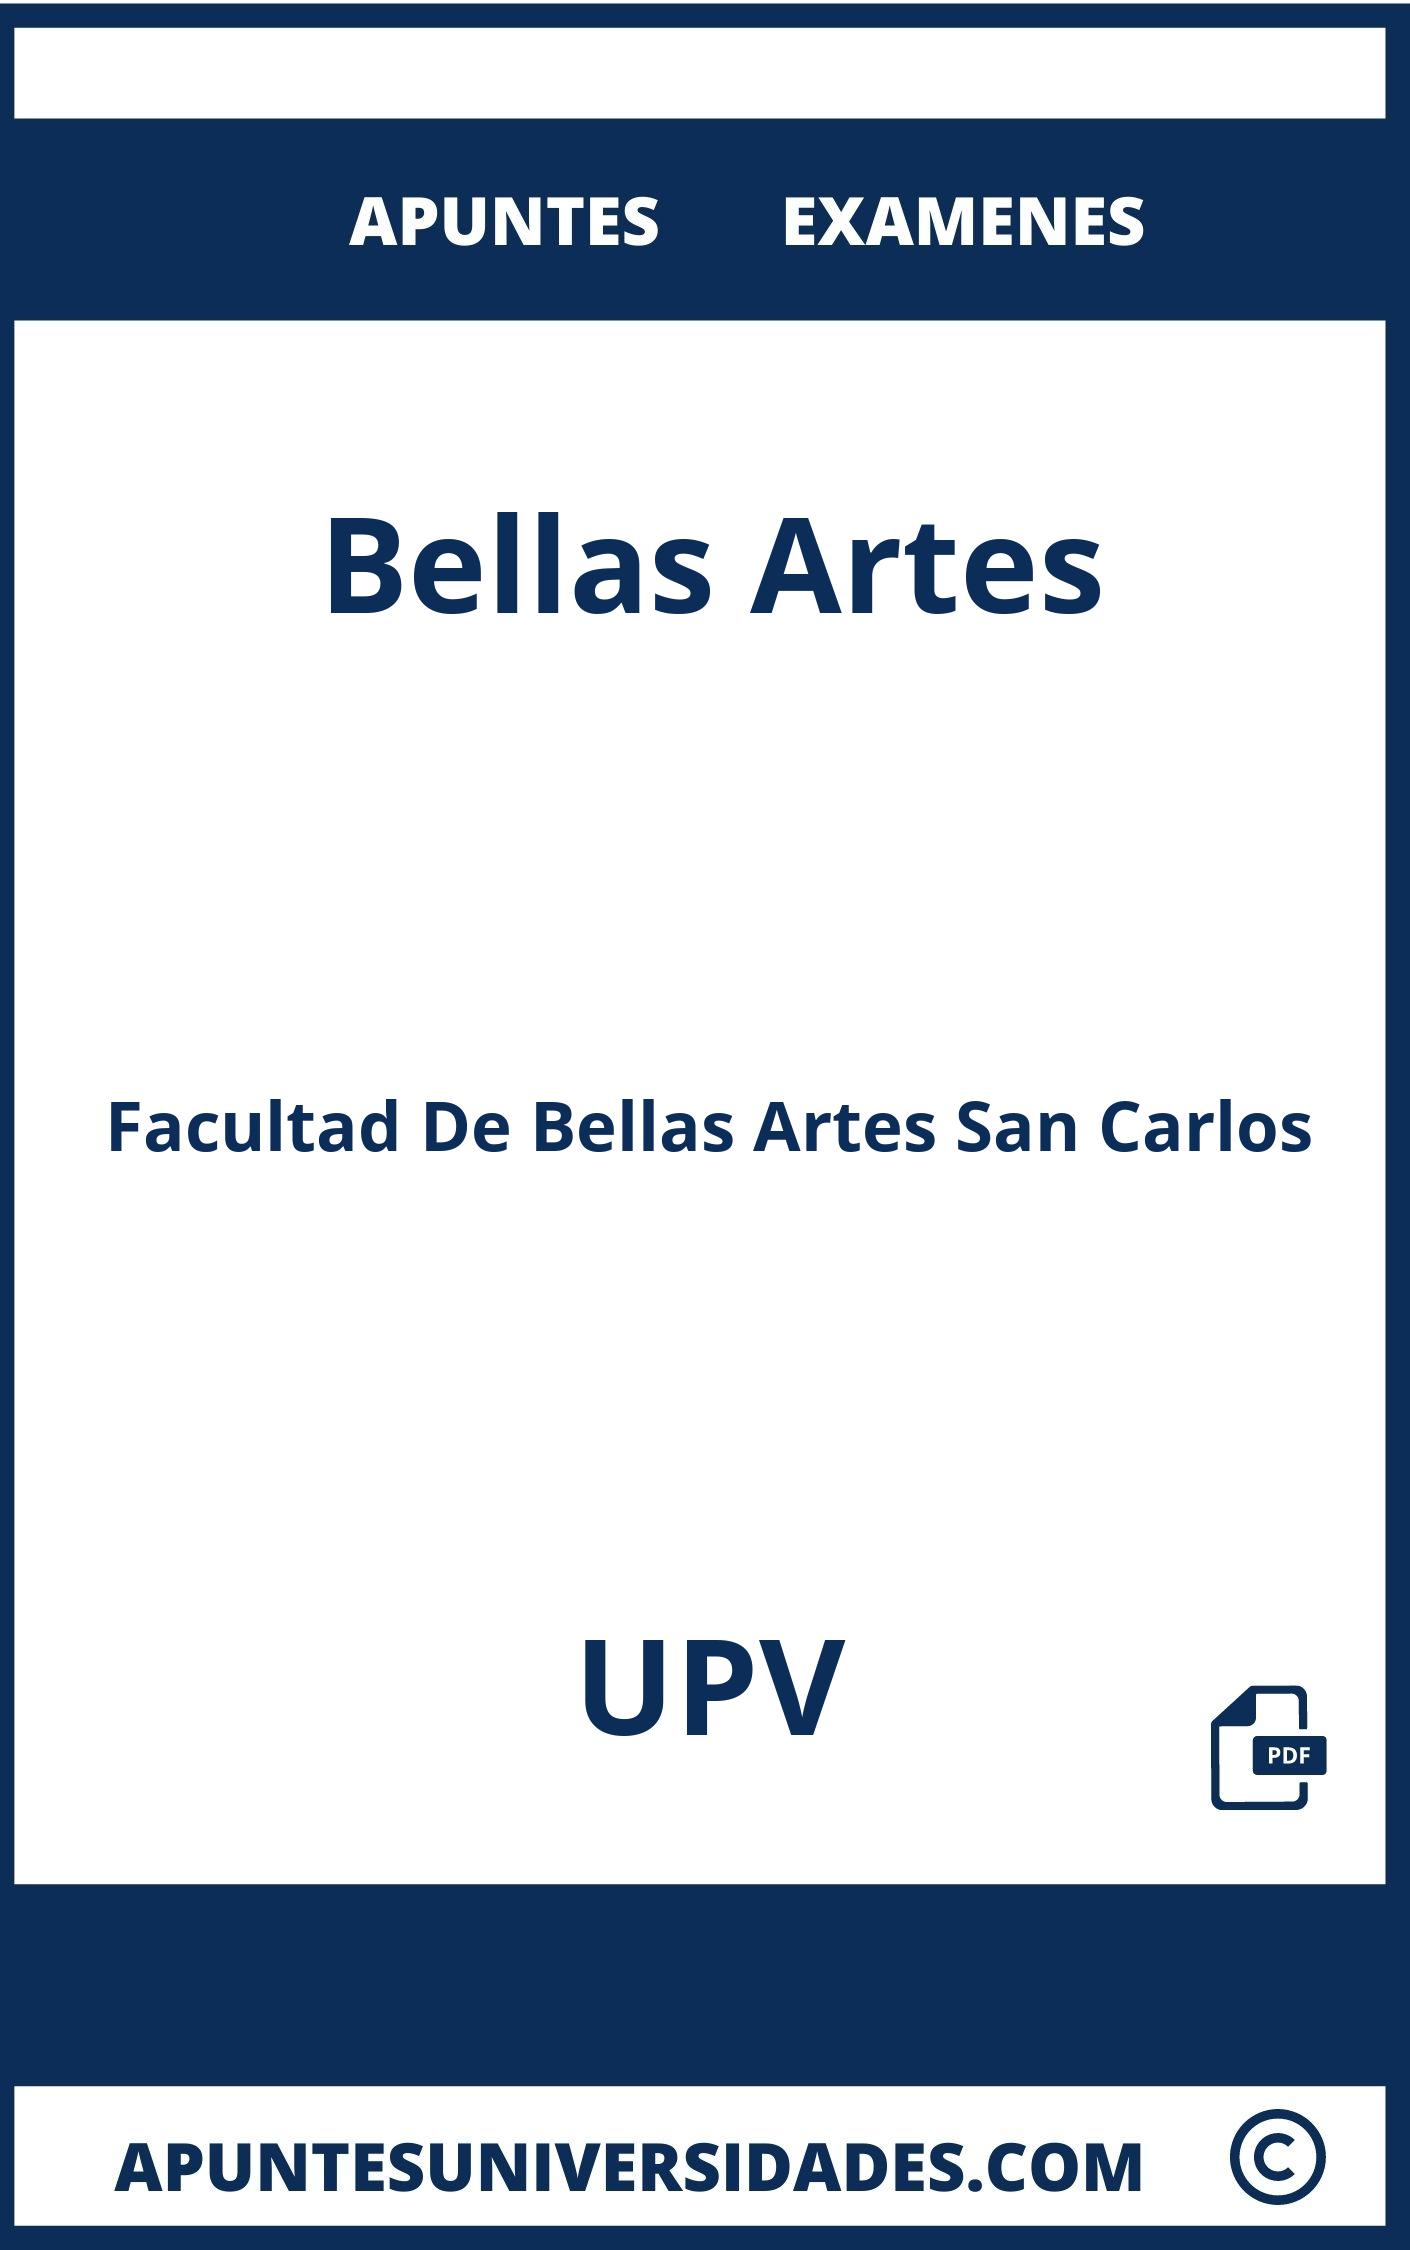 Bellas Artes UPV Examenes Apuntes